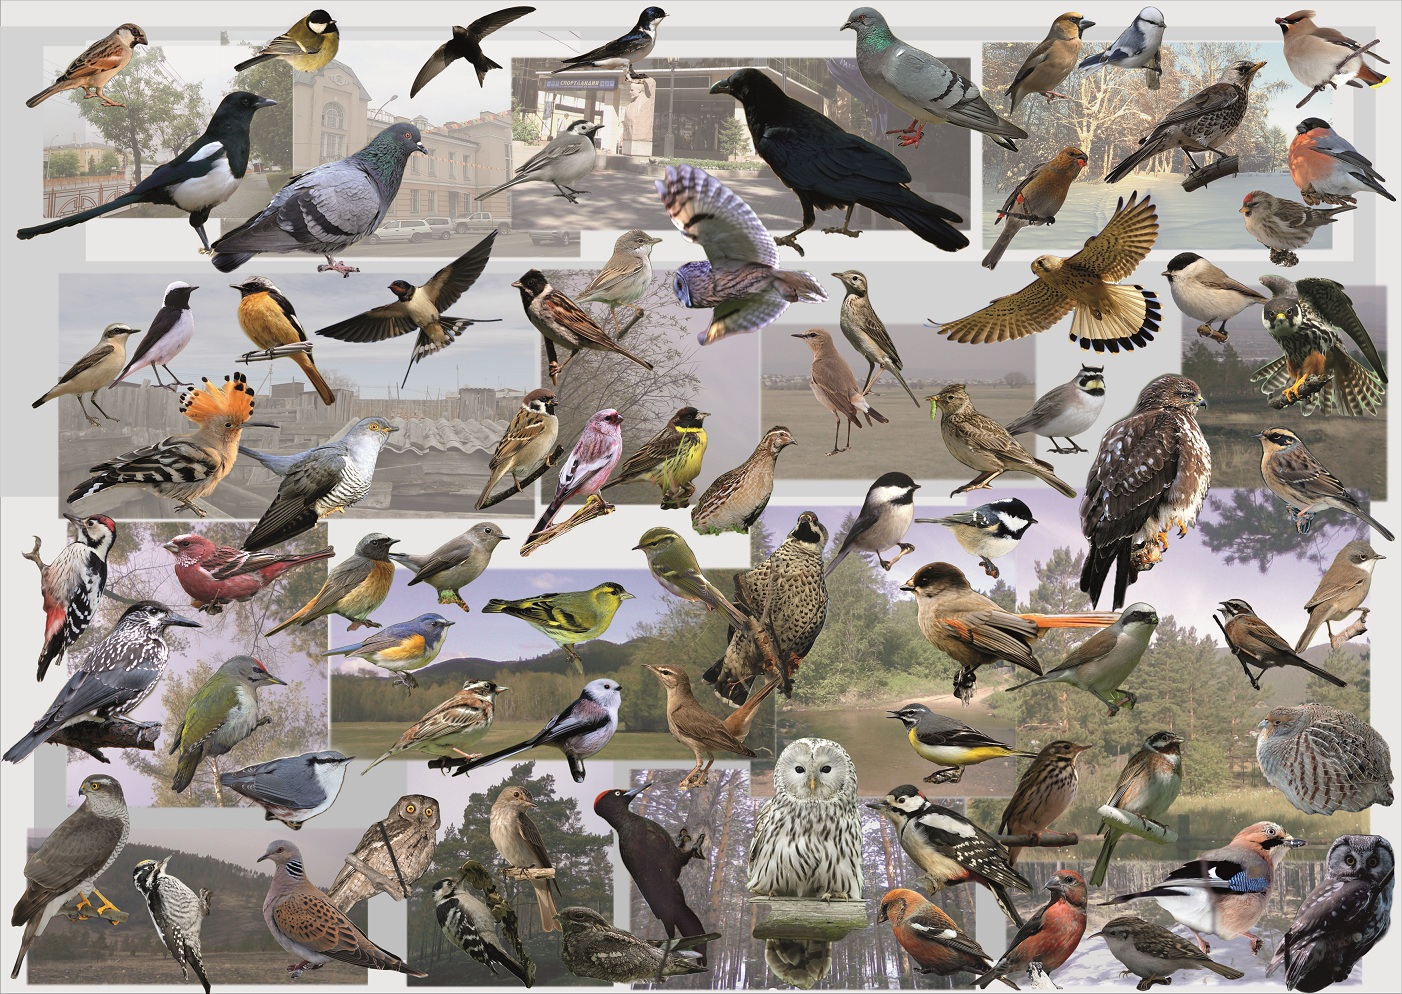 Узнать птицу по фото программа онлайн